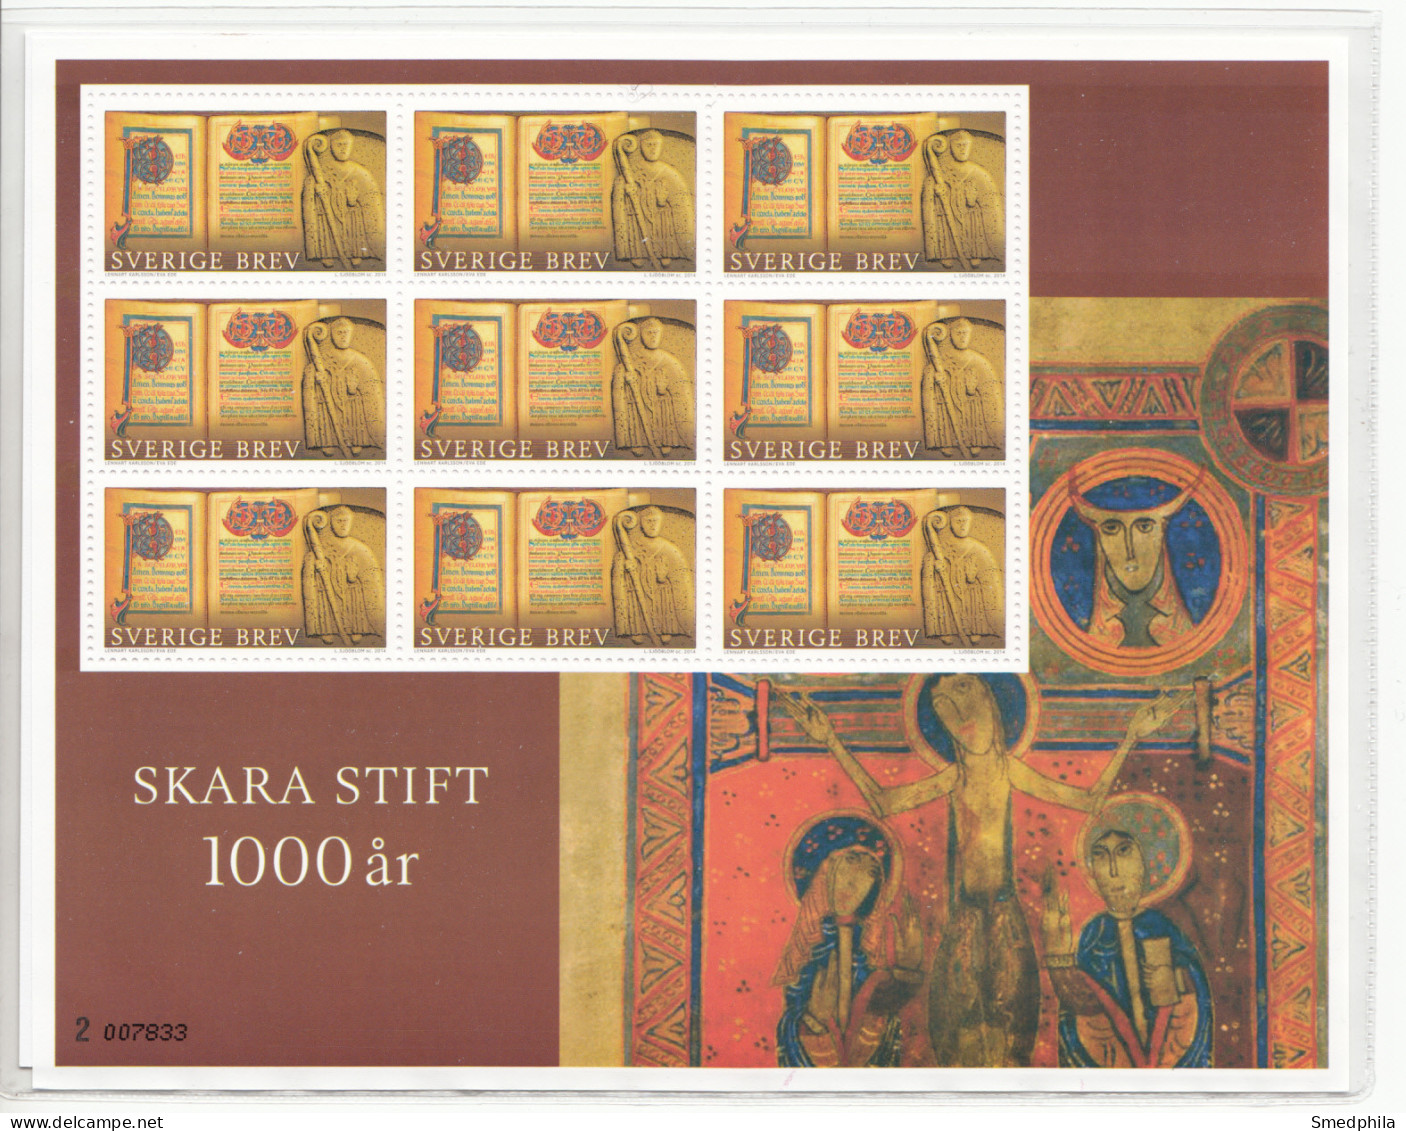 Sweden Souvenir Sheet 2014 - Church Art MNH ** - Blocks & Kleinbögen